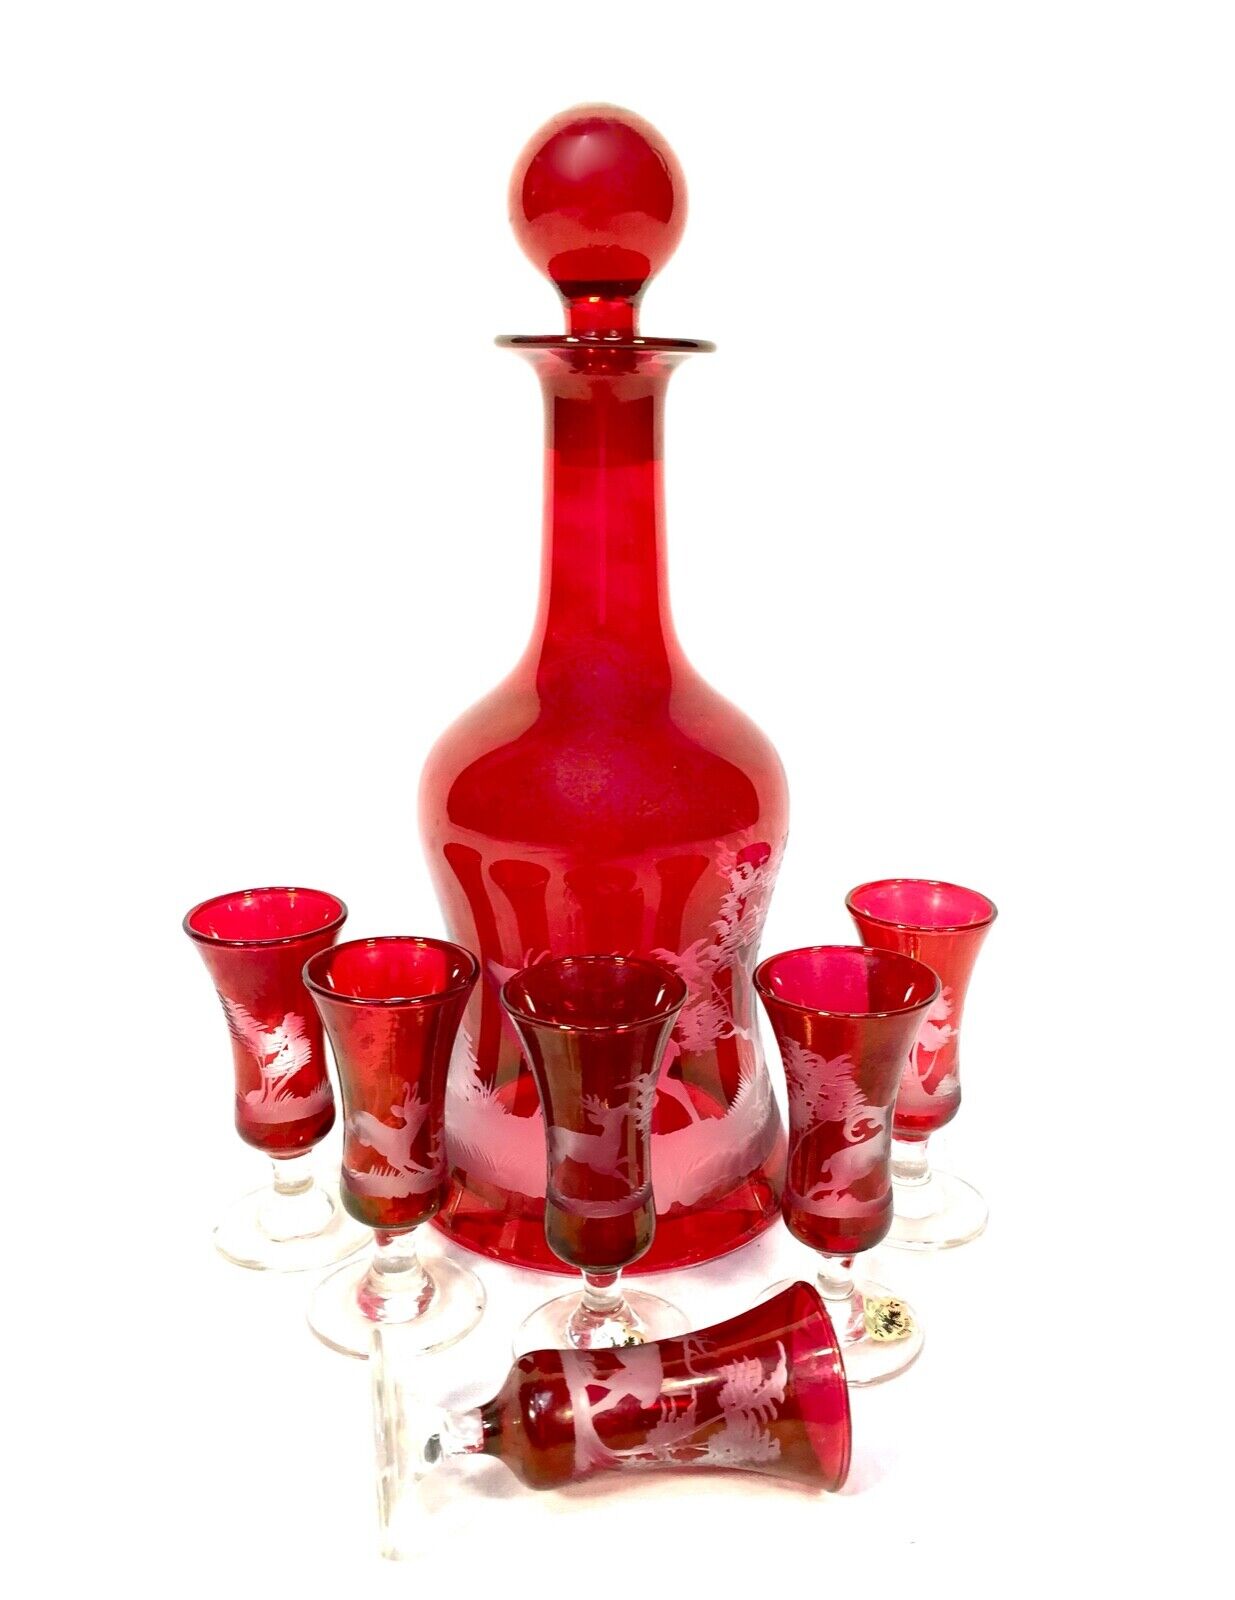 Vintage Kisslinger Ruby Red Glass Decanter Set / Austrian Antique / Liquor